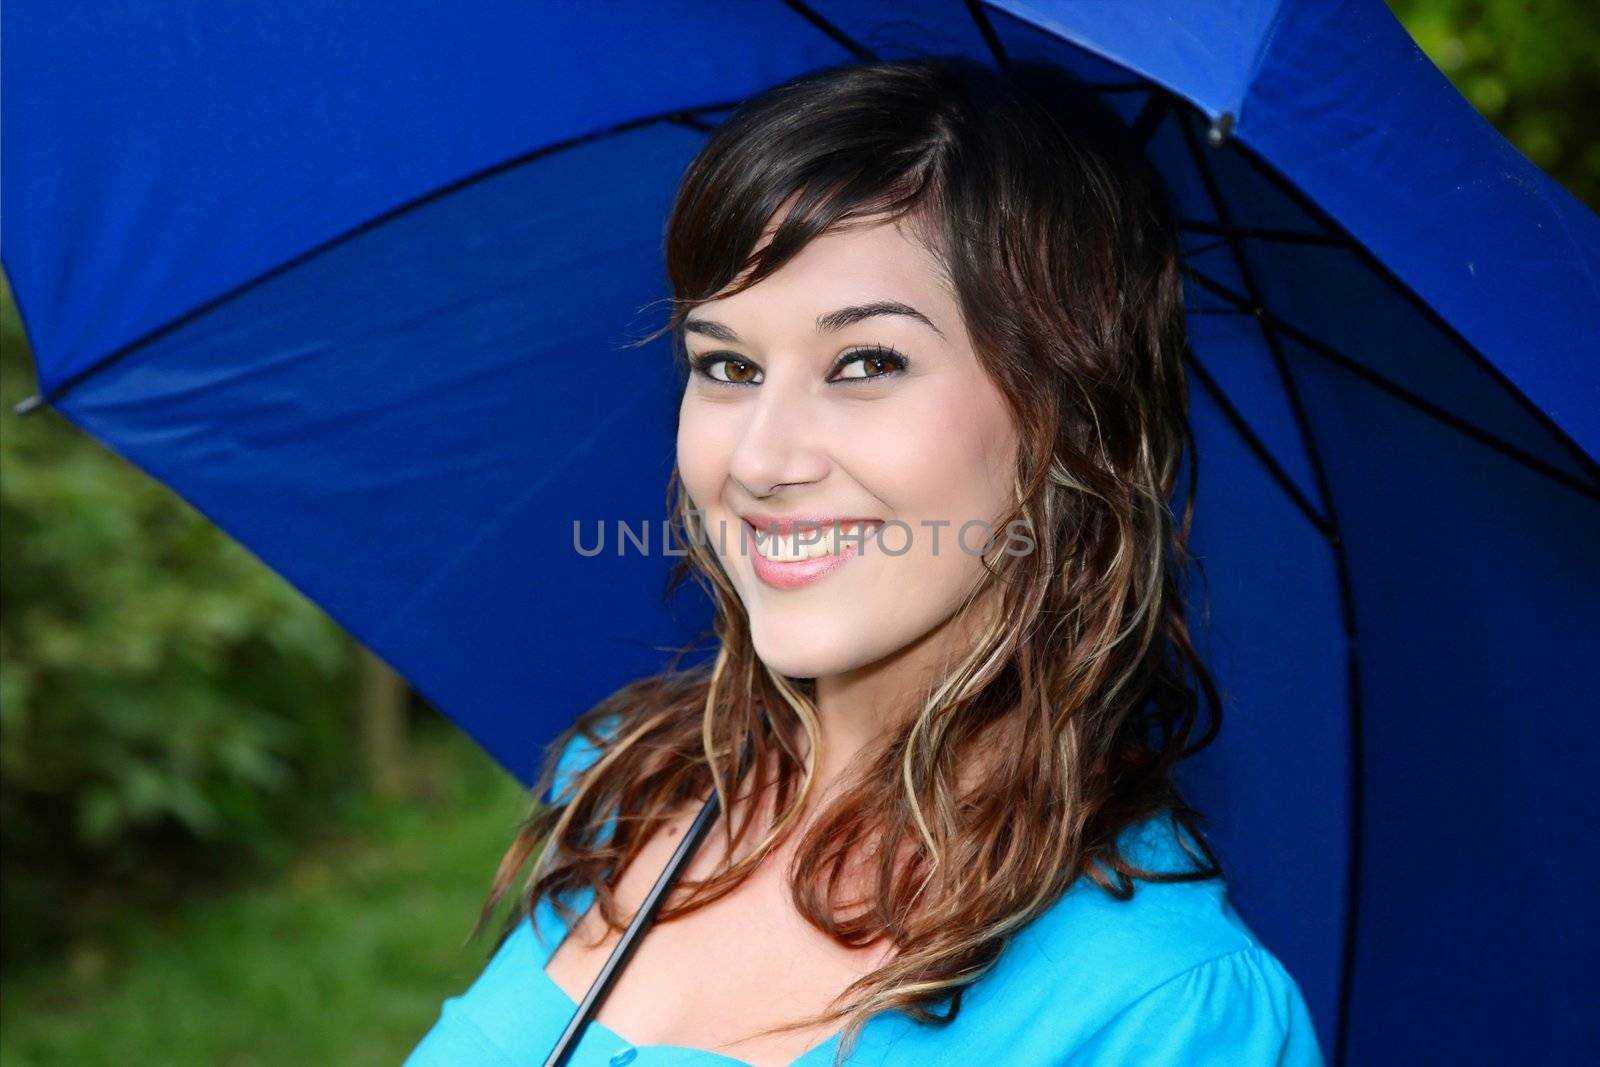 Gorgeous Girl with Umbrella by fouroaks